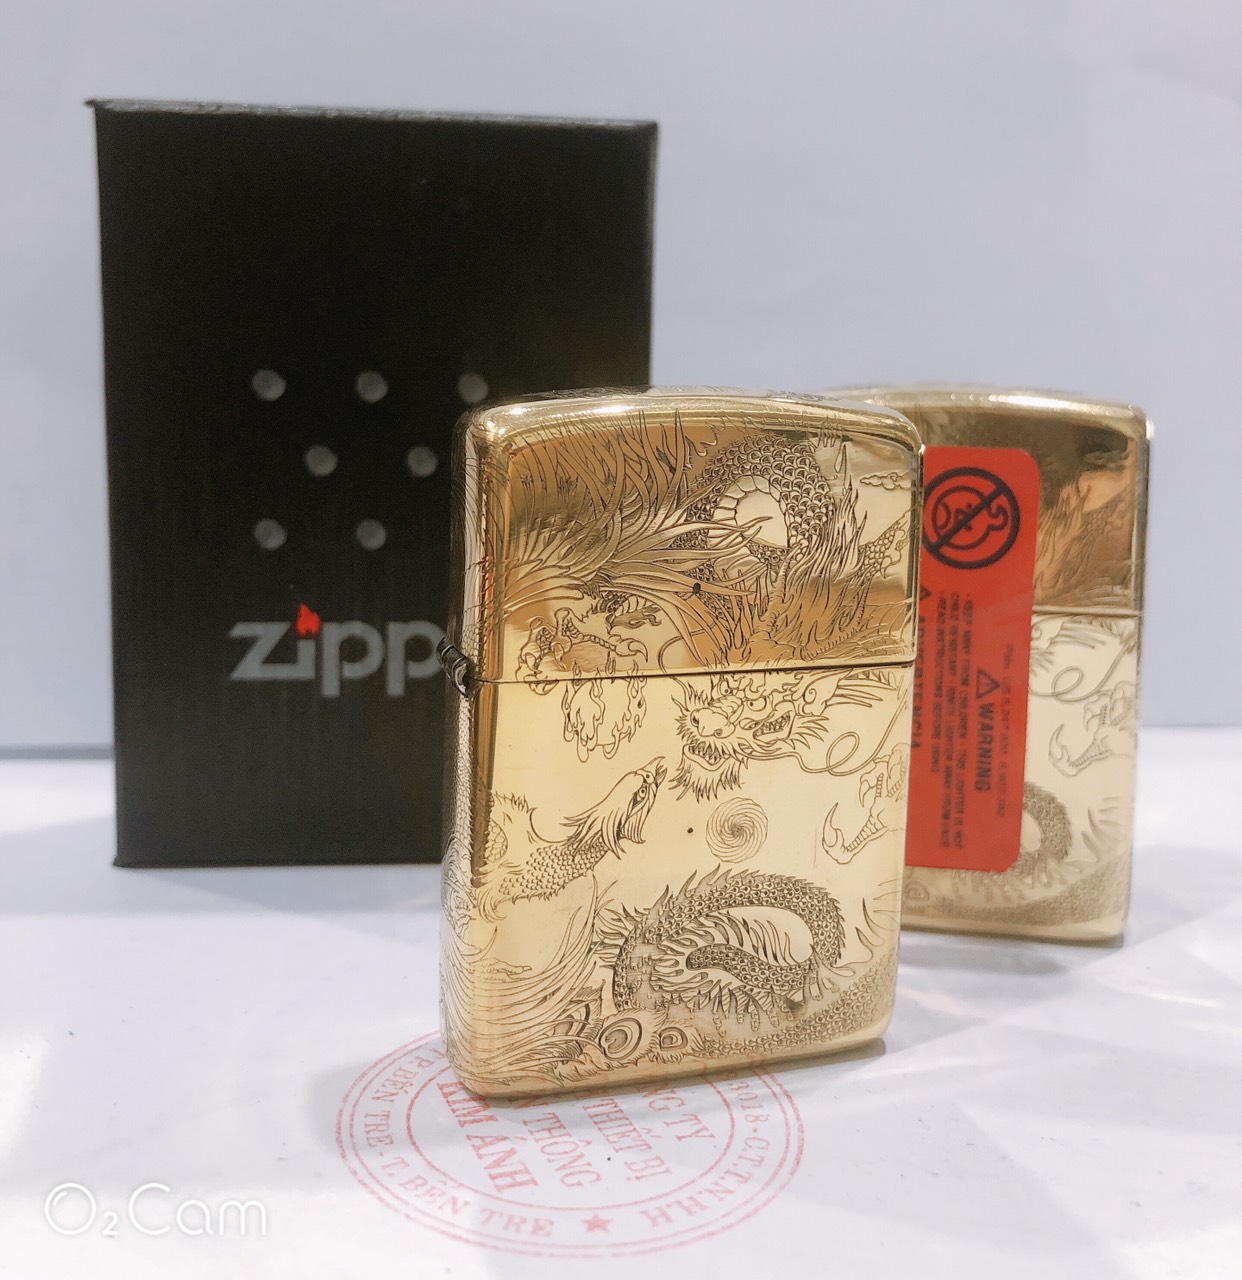 Hộp quẹt Zippo Armor vỏ dầy, khắc chìm chủ đề Long Phụng Tranh Châu, Hàng loại 1 vỏ bằng đồng có tem đỏ